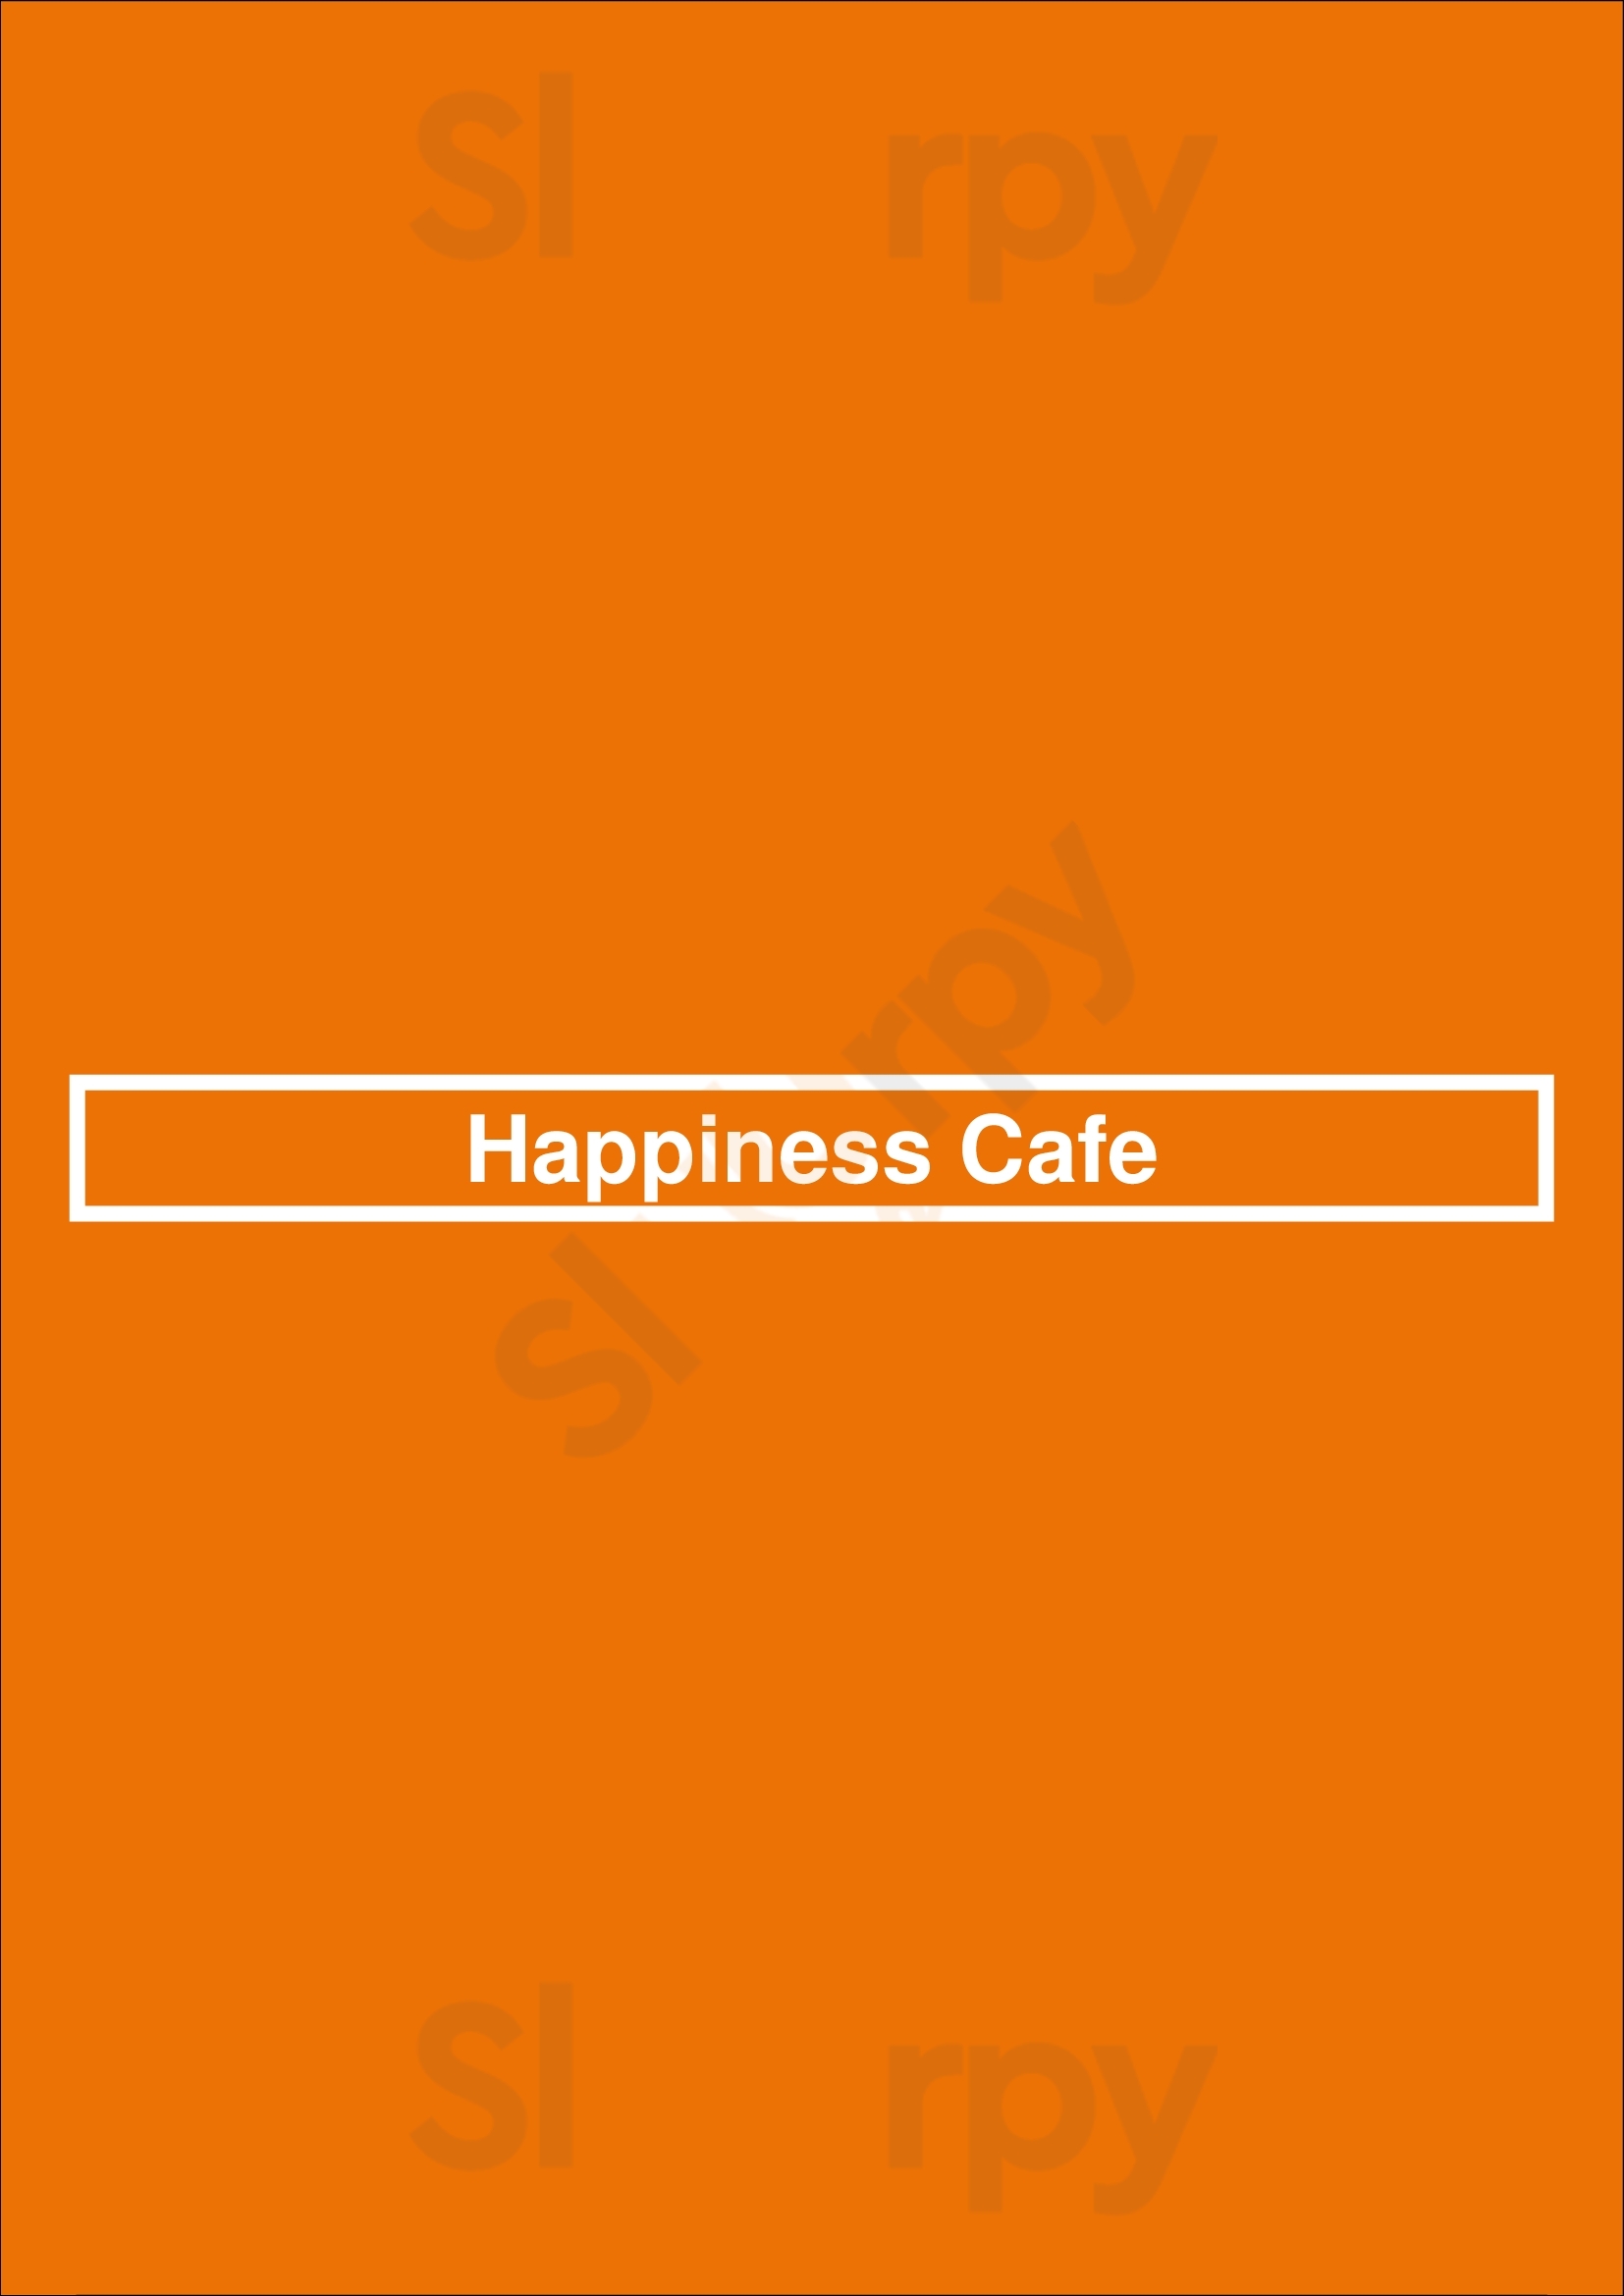 Happiness Cafe San Jose Menu - 1